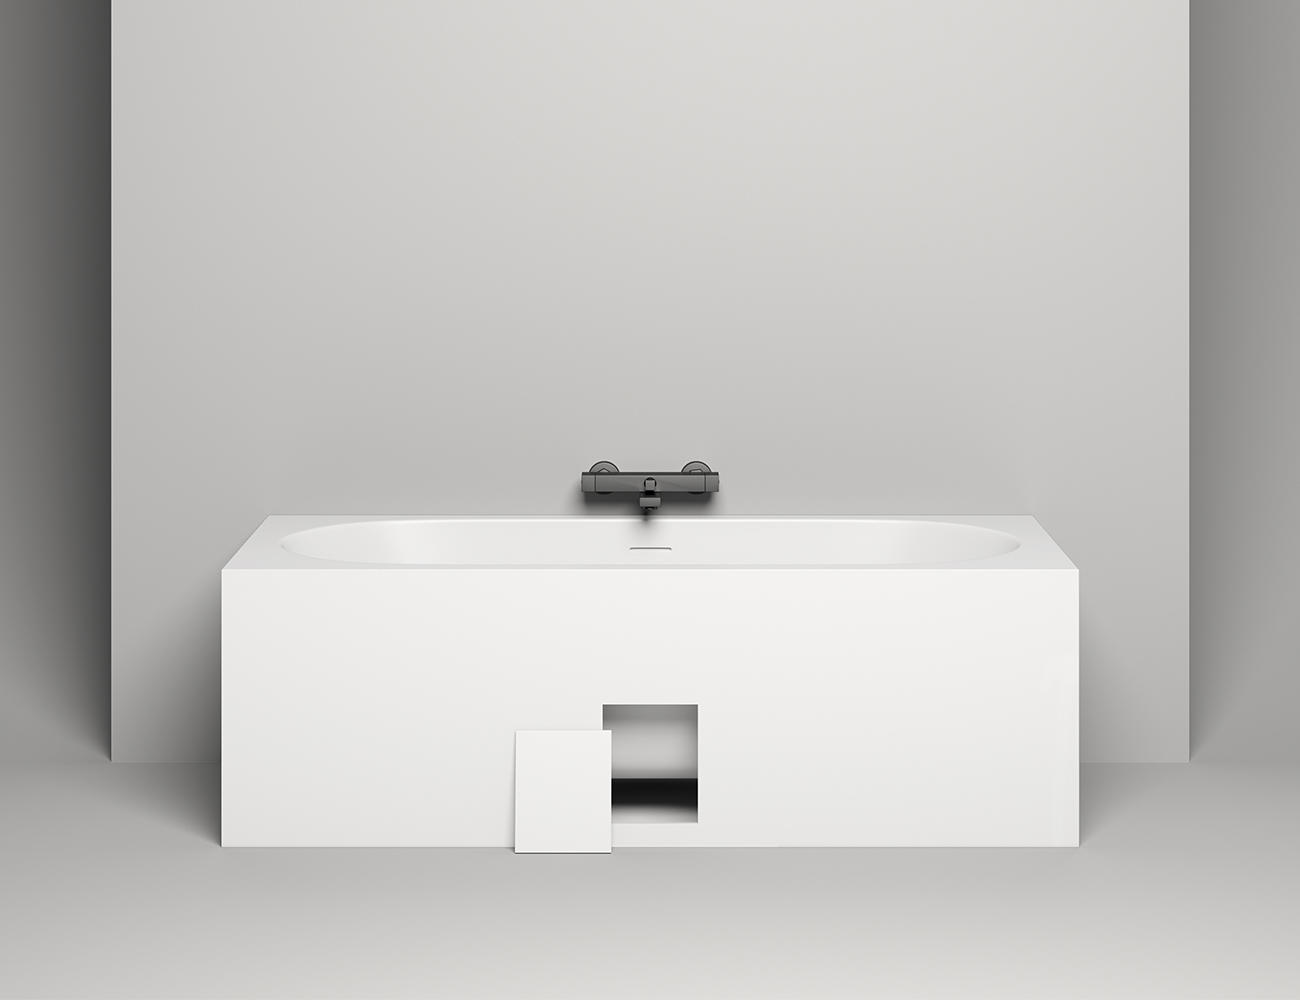 Ванна из литьевого мрамора Salini Ornella Axis Kit  S-Sense 103511G 180x80, белый глянцевый